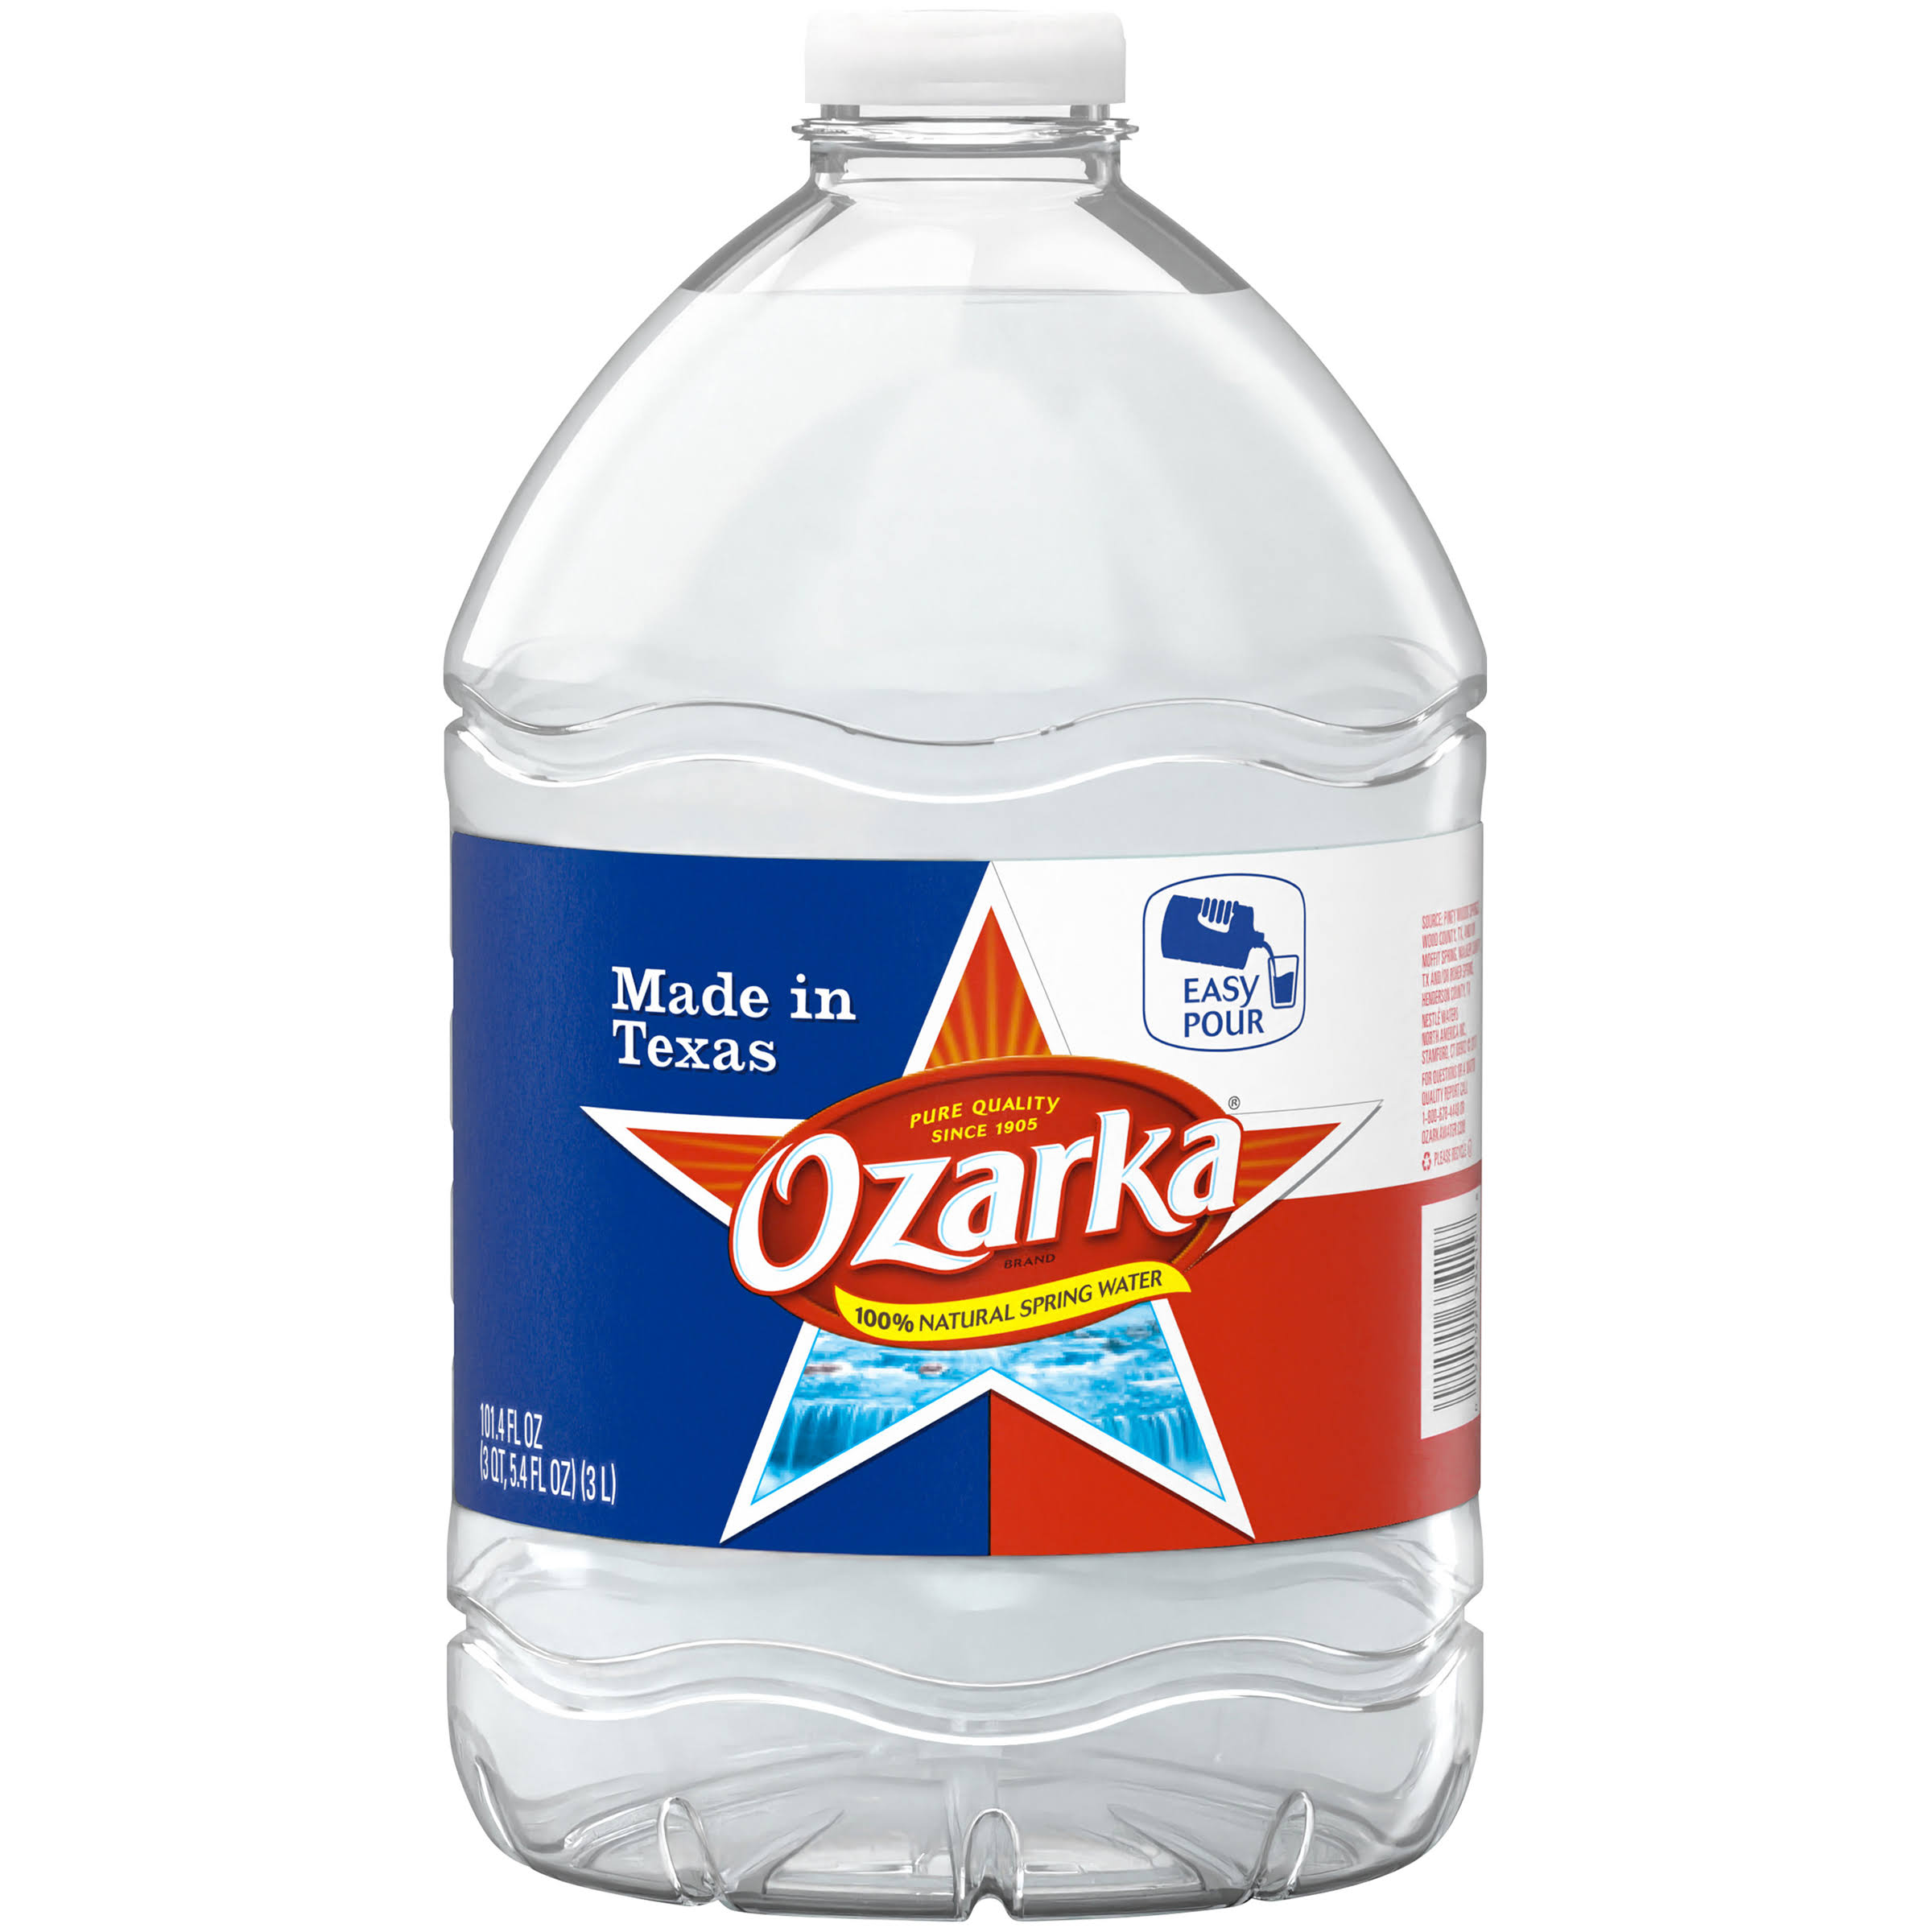 Ozarka 100% Natural Spring Water